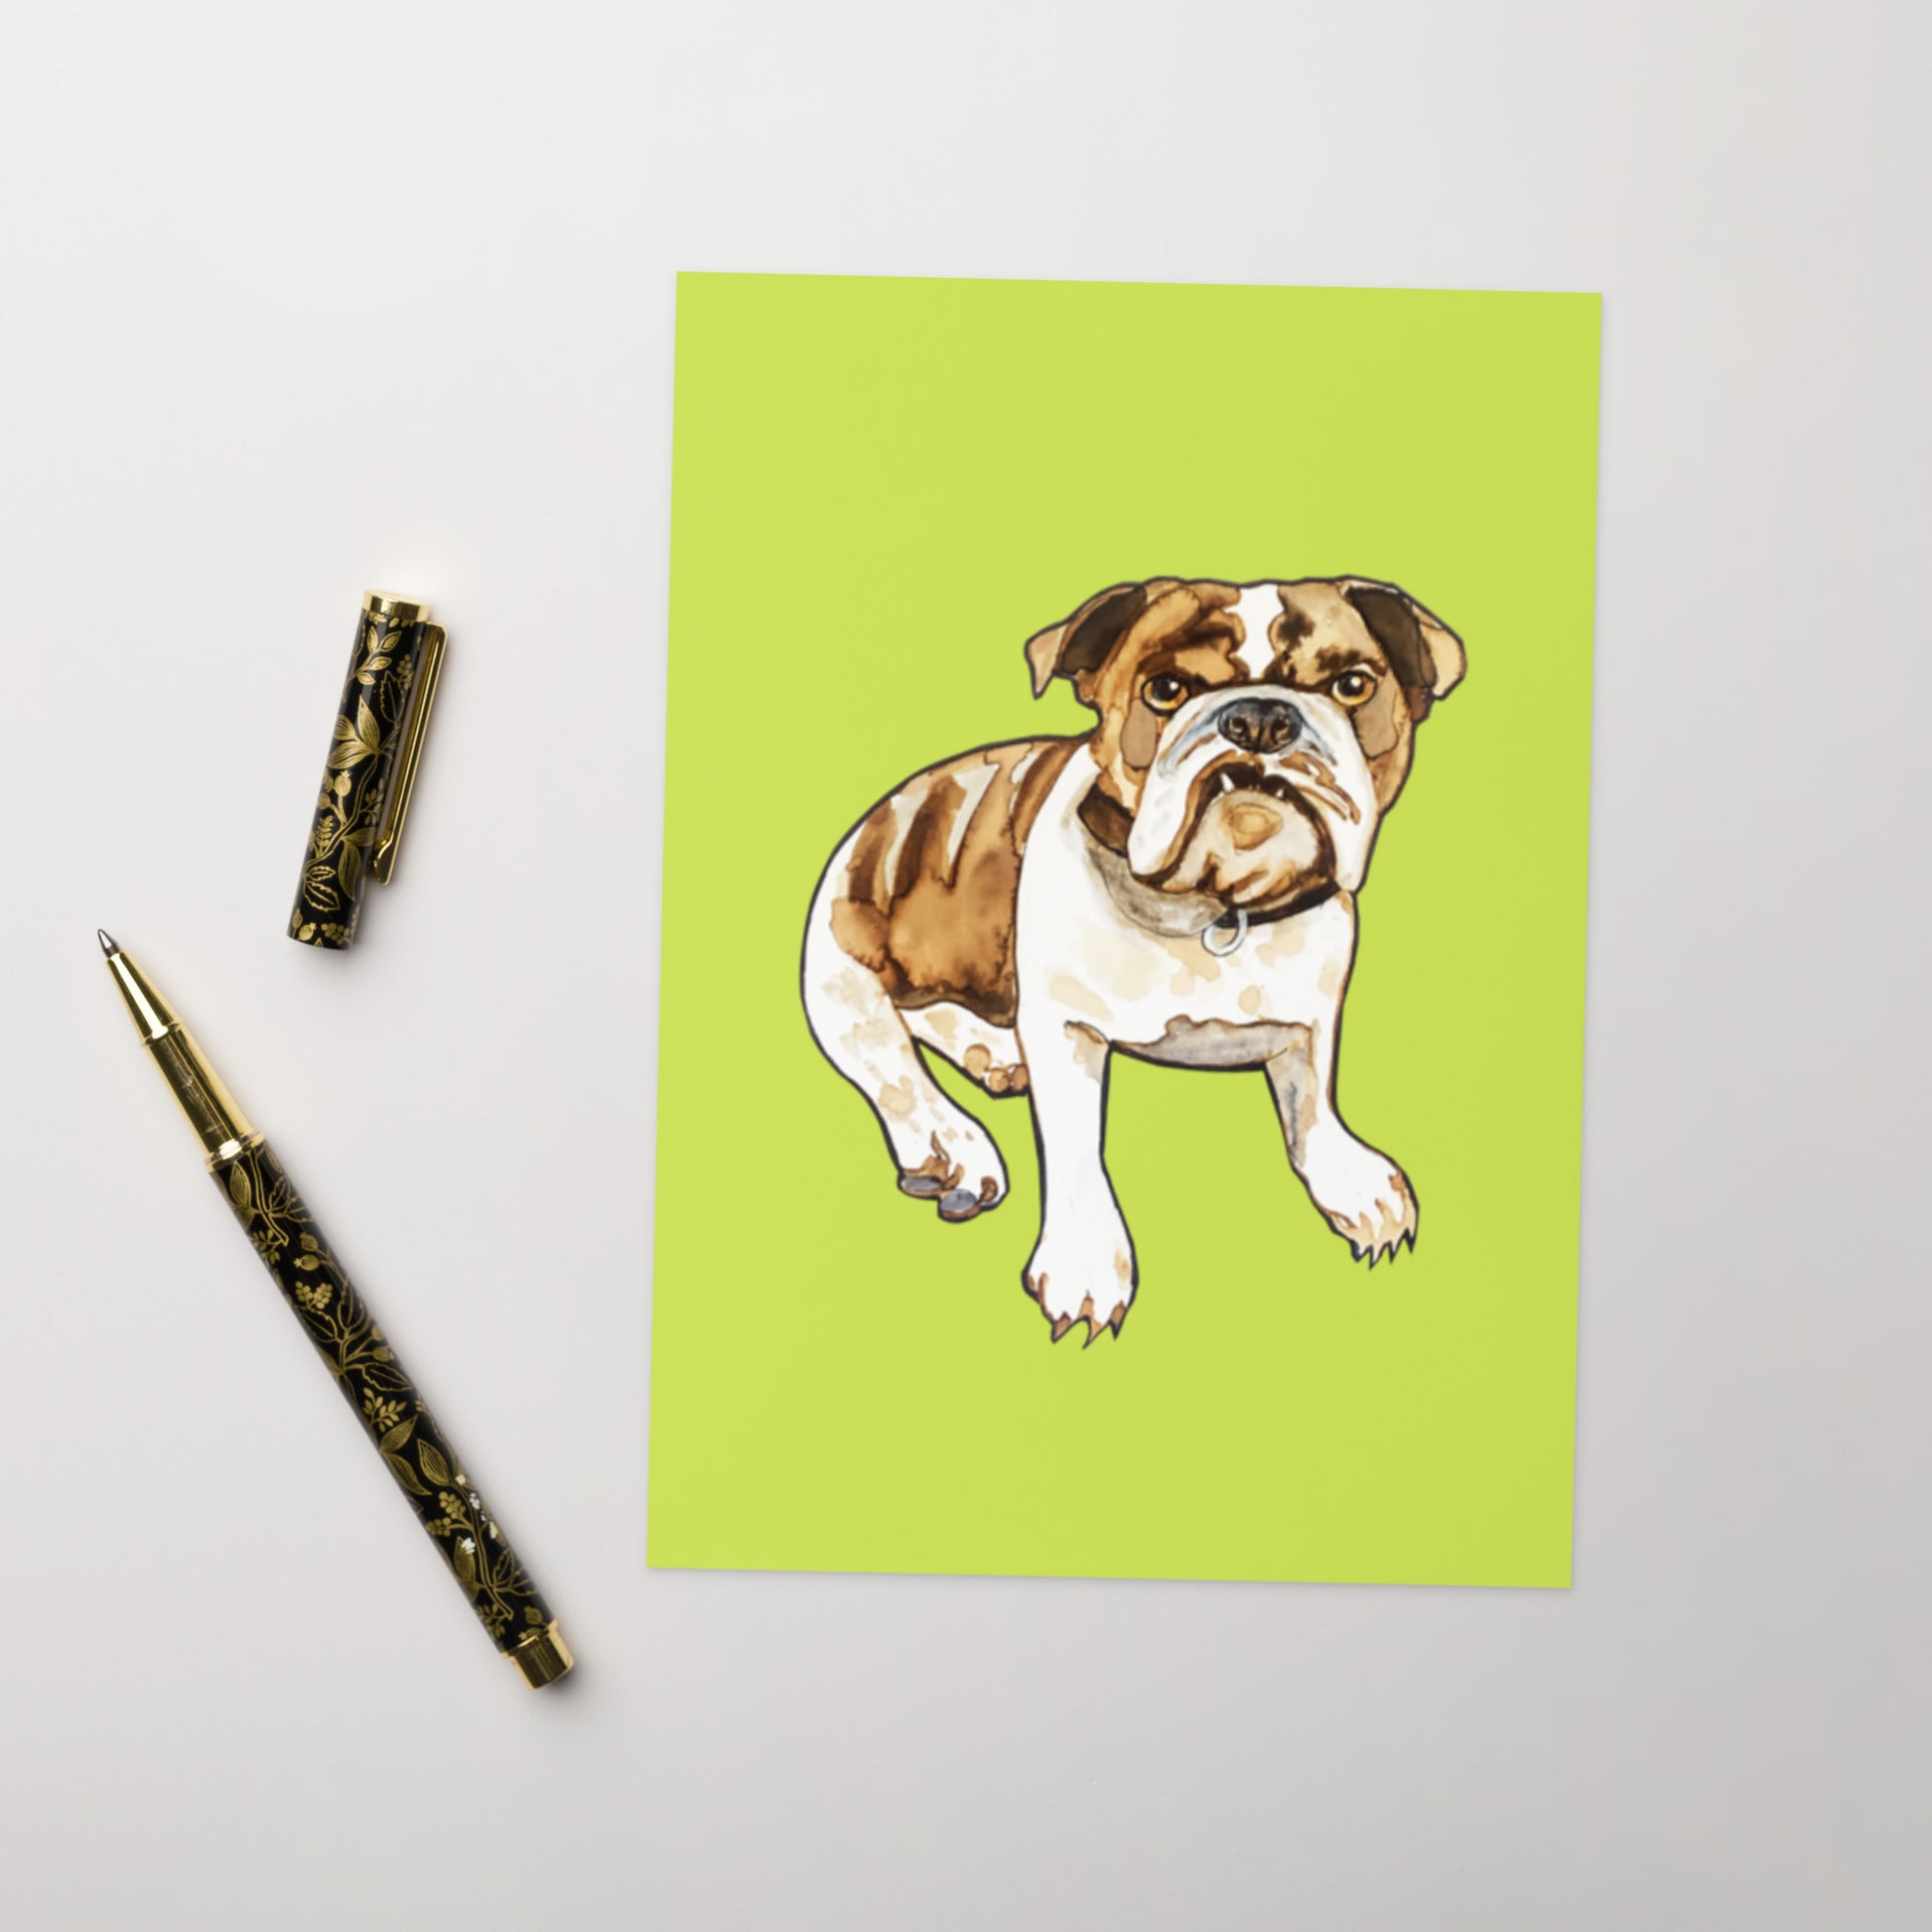 Bull Dog Greeting card - Art Love Decor